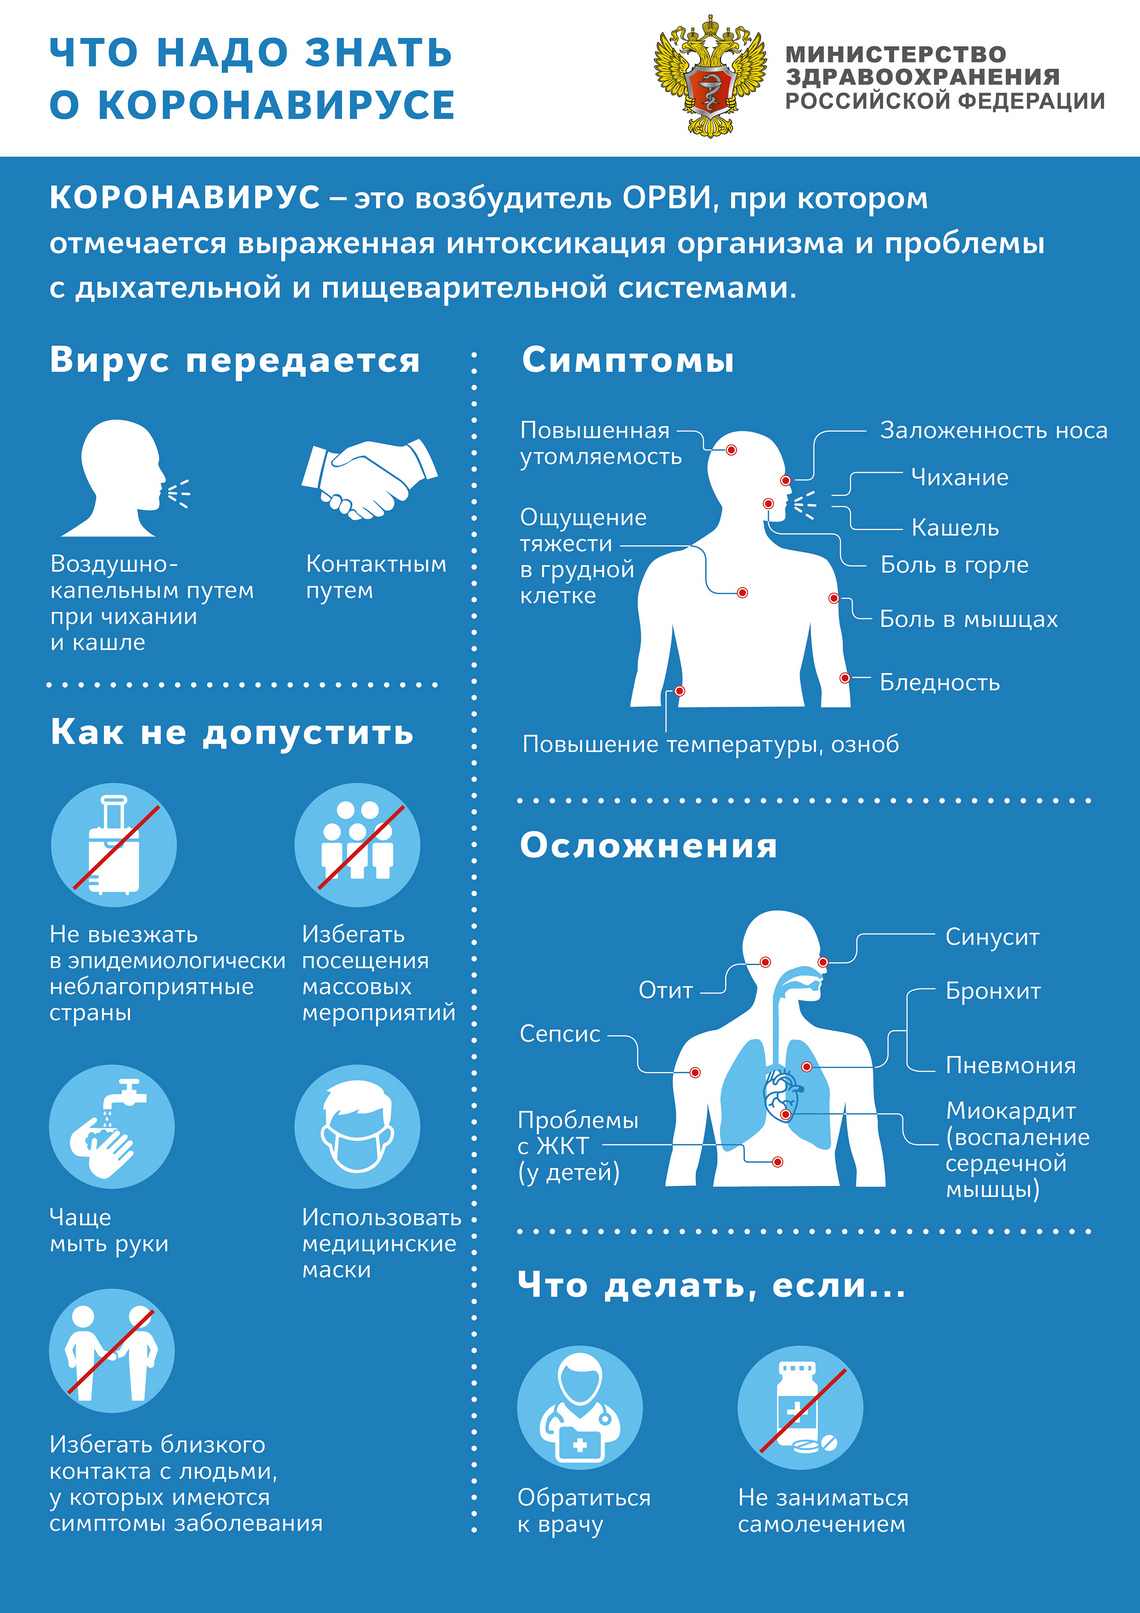 Министерство здравоохранения РФ. Что нужно знать о коронавирусе